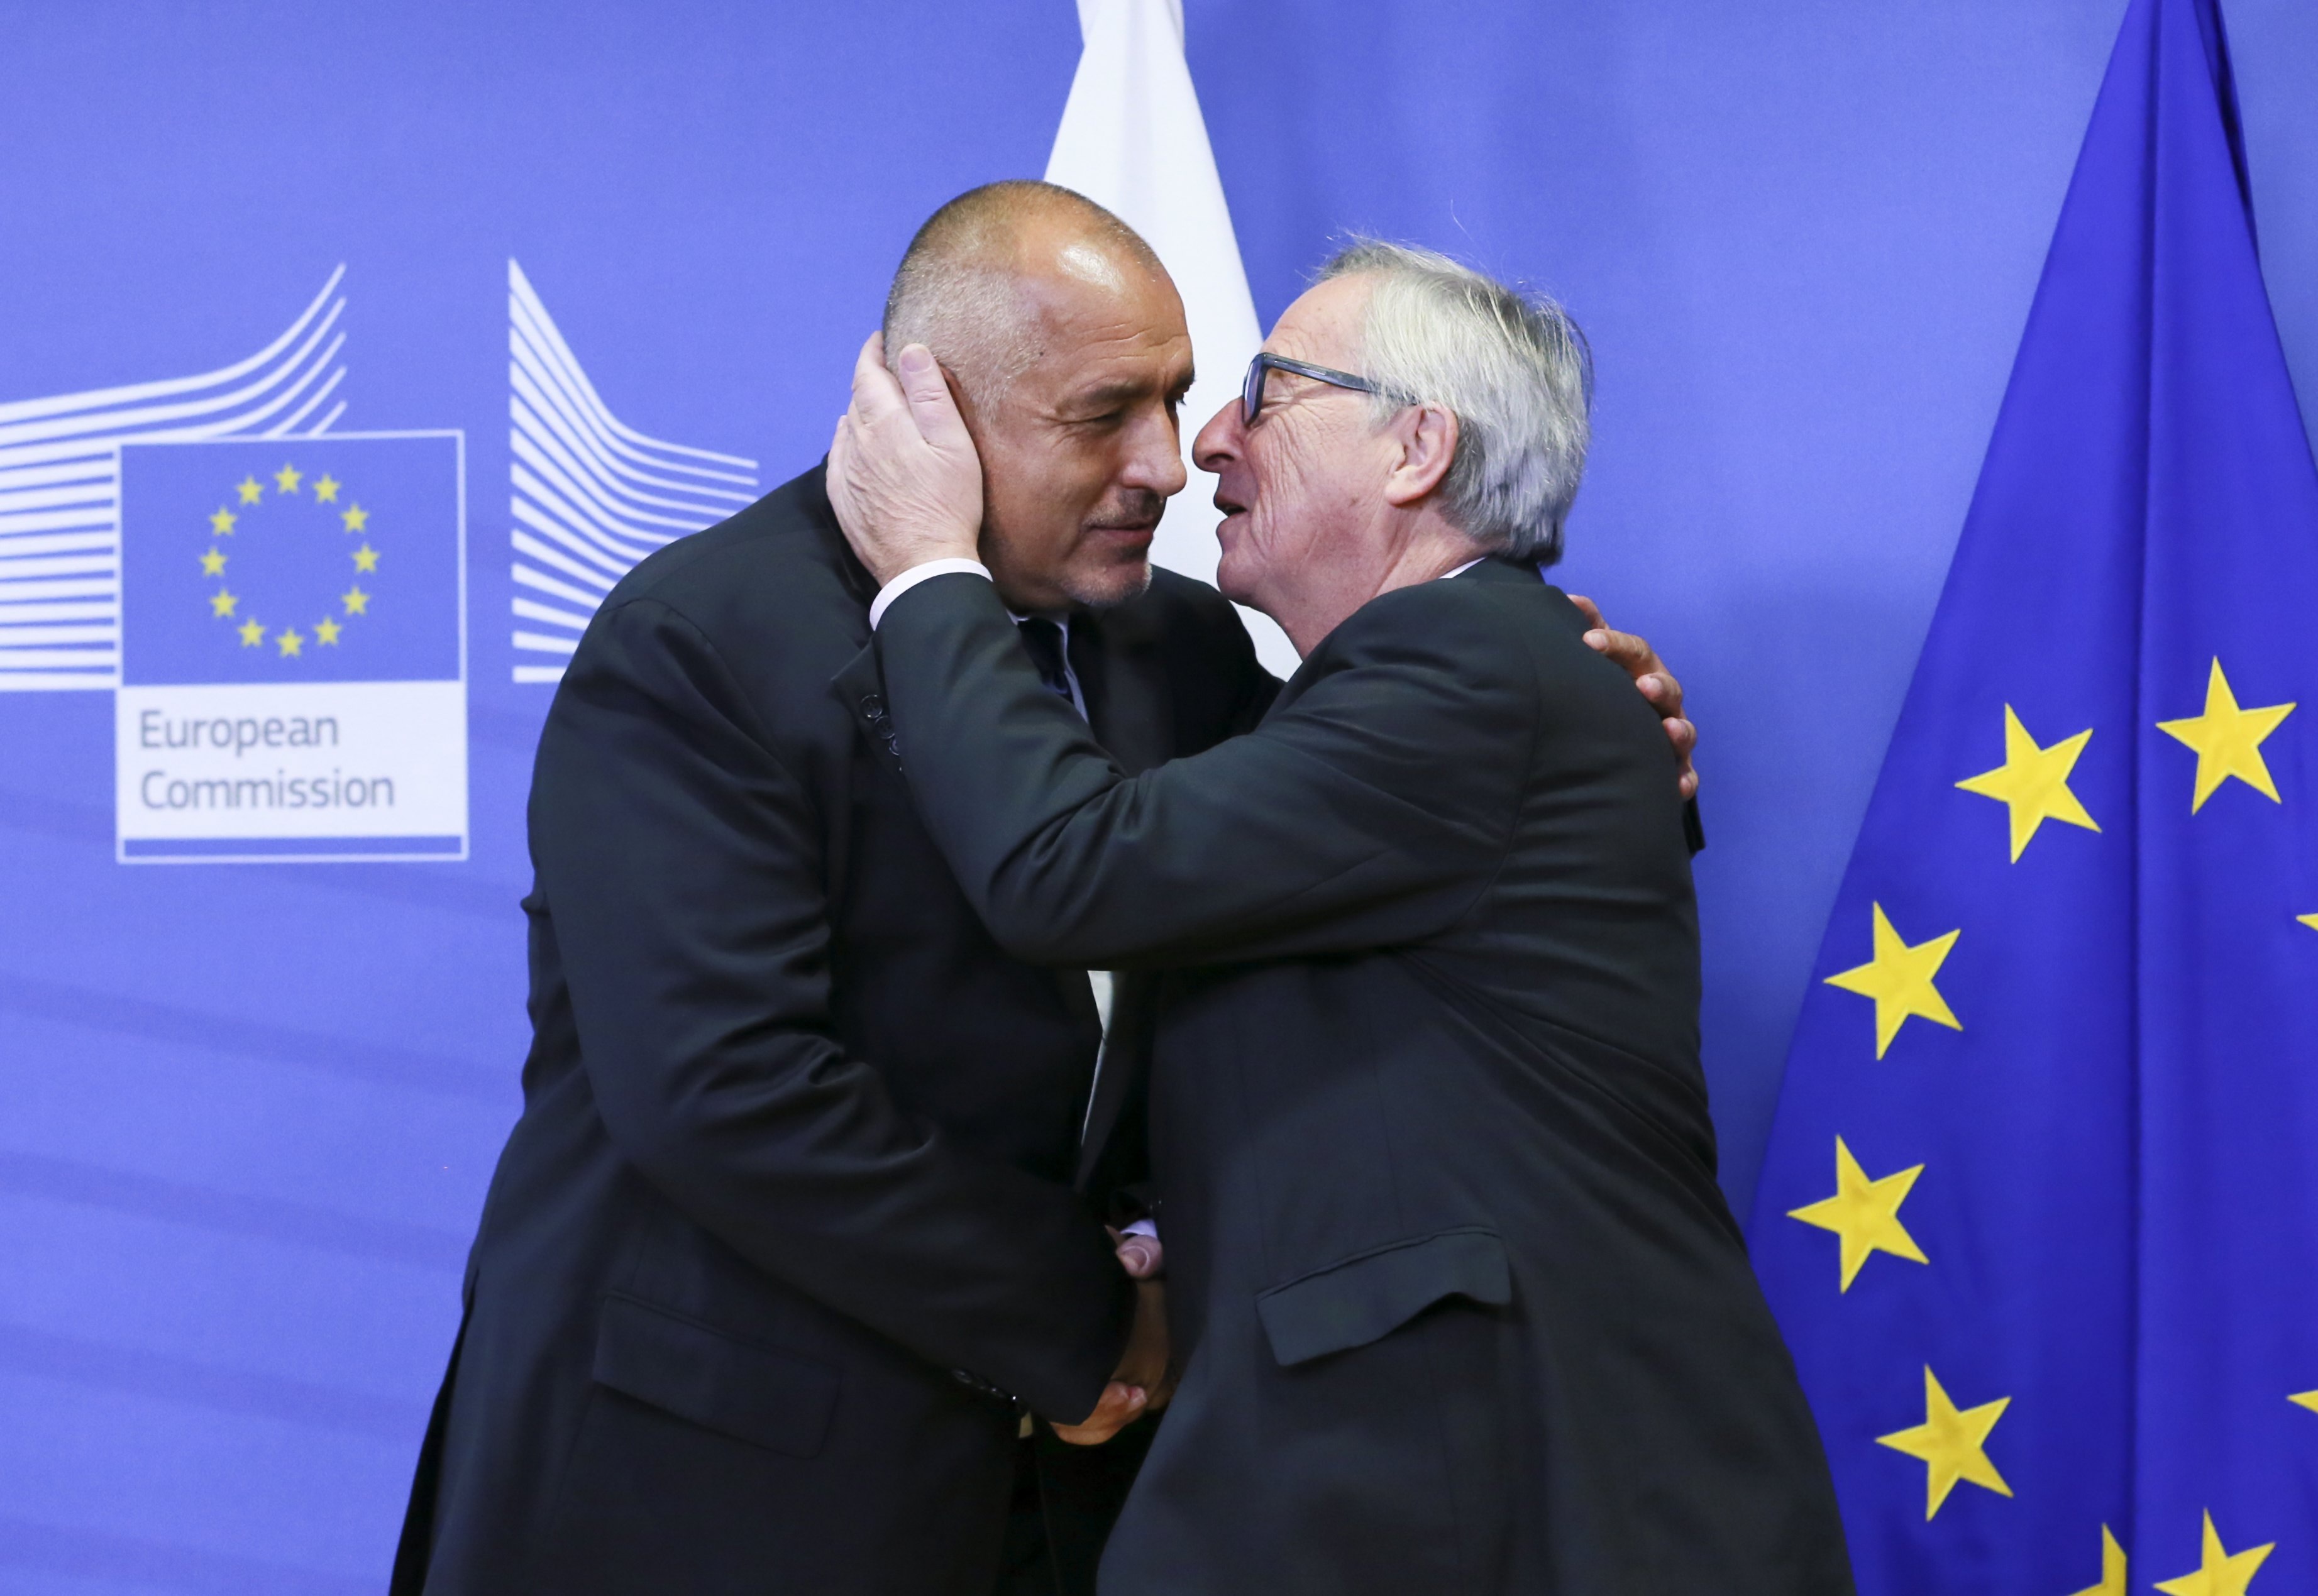 Министър-председателят Бойко Борисов и голяма част от министрите в кабинета му са в Брюксел, за срещи с еврокомисарите от съответните ресори преди Българското председателство на Съвета на Европейския съюз през 2018 г. Премиерът се срещна с председателя на Европейската комисия Жан-Клод Юнкер, като двамата демонстрираха топли чувства един към друг